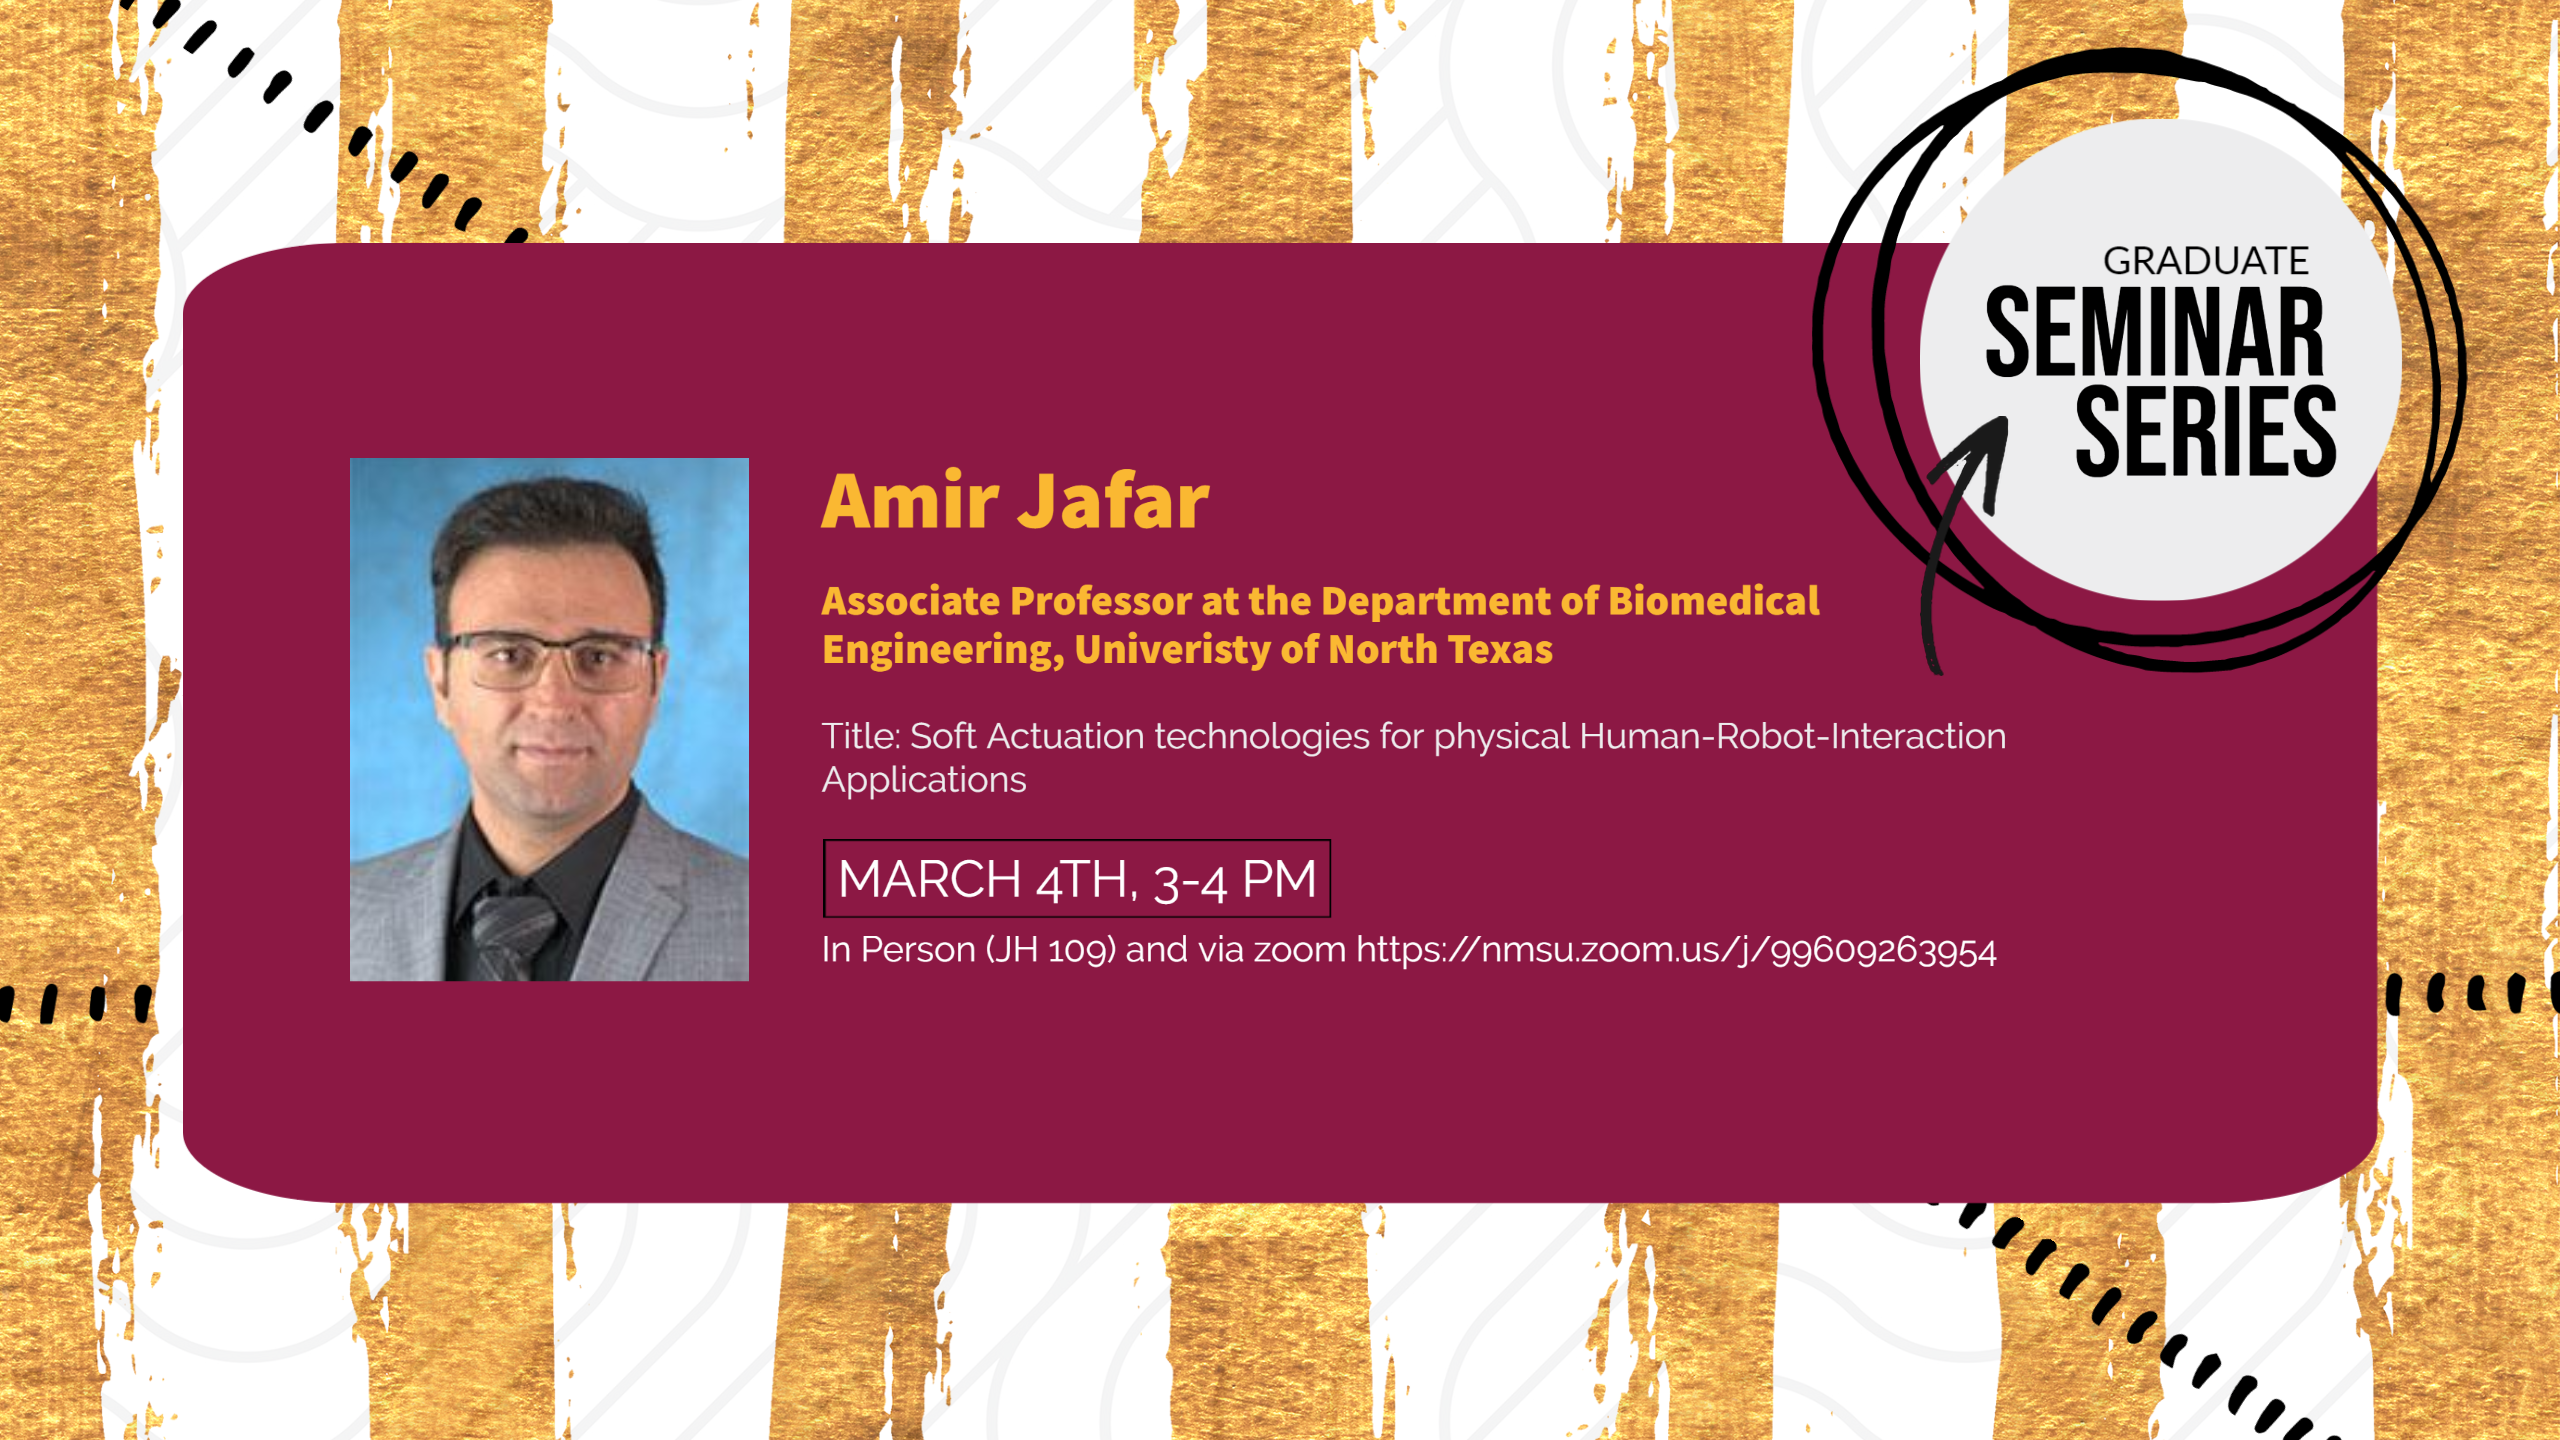 Announcement of Graduate Seminar by Dr. Amir Jafar